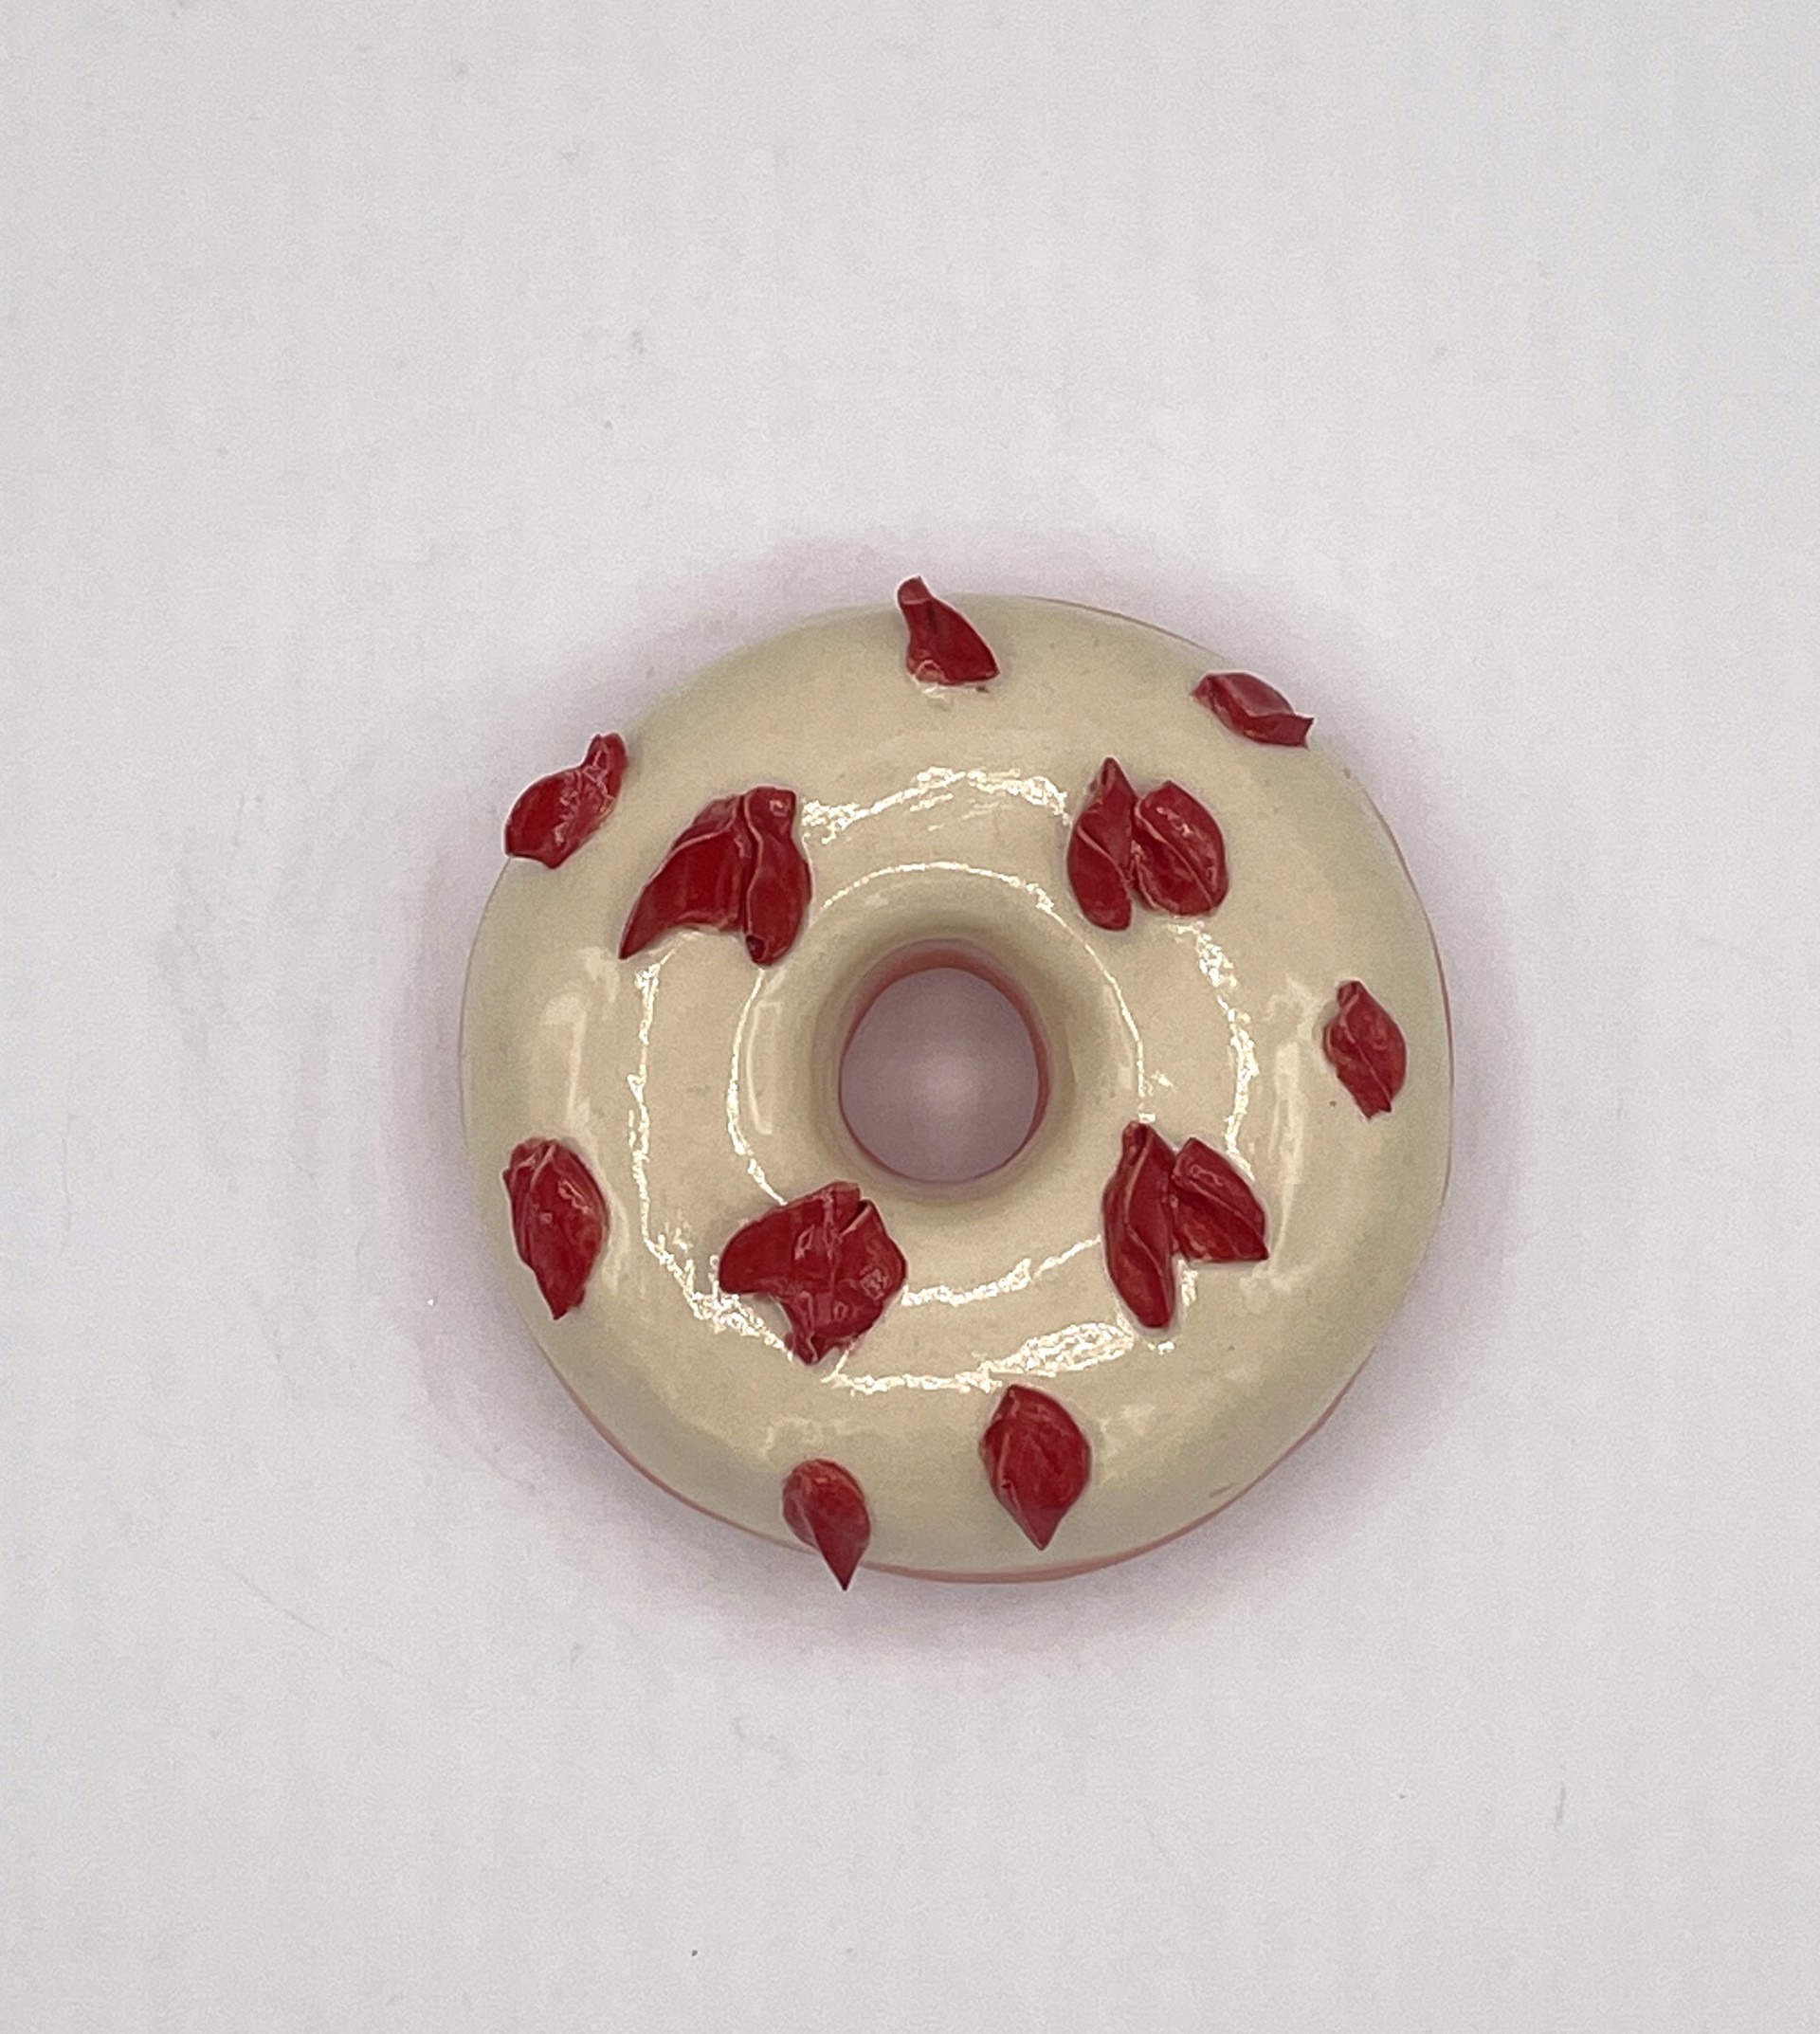 Strawberry Donut with Sprinkles by Liv Antonecchia